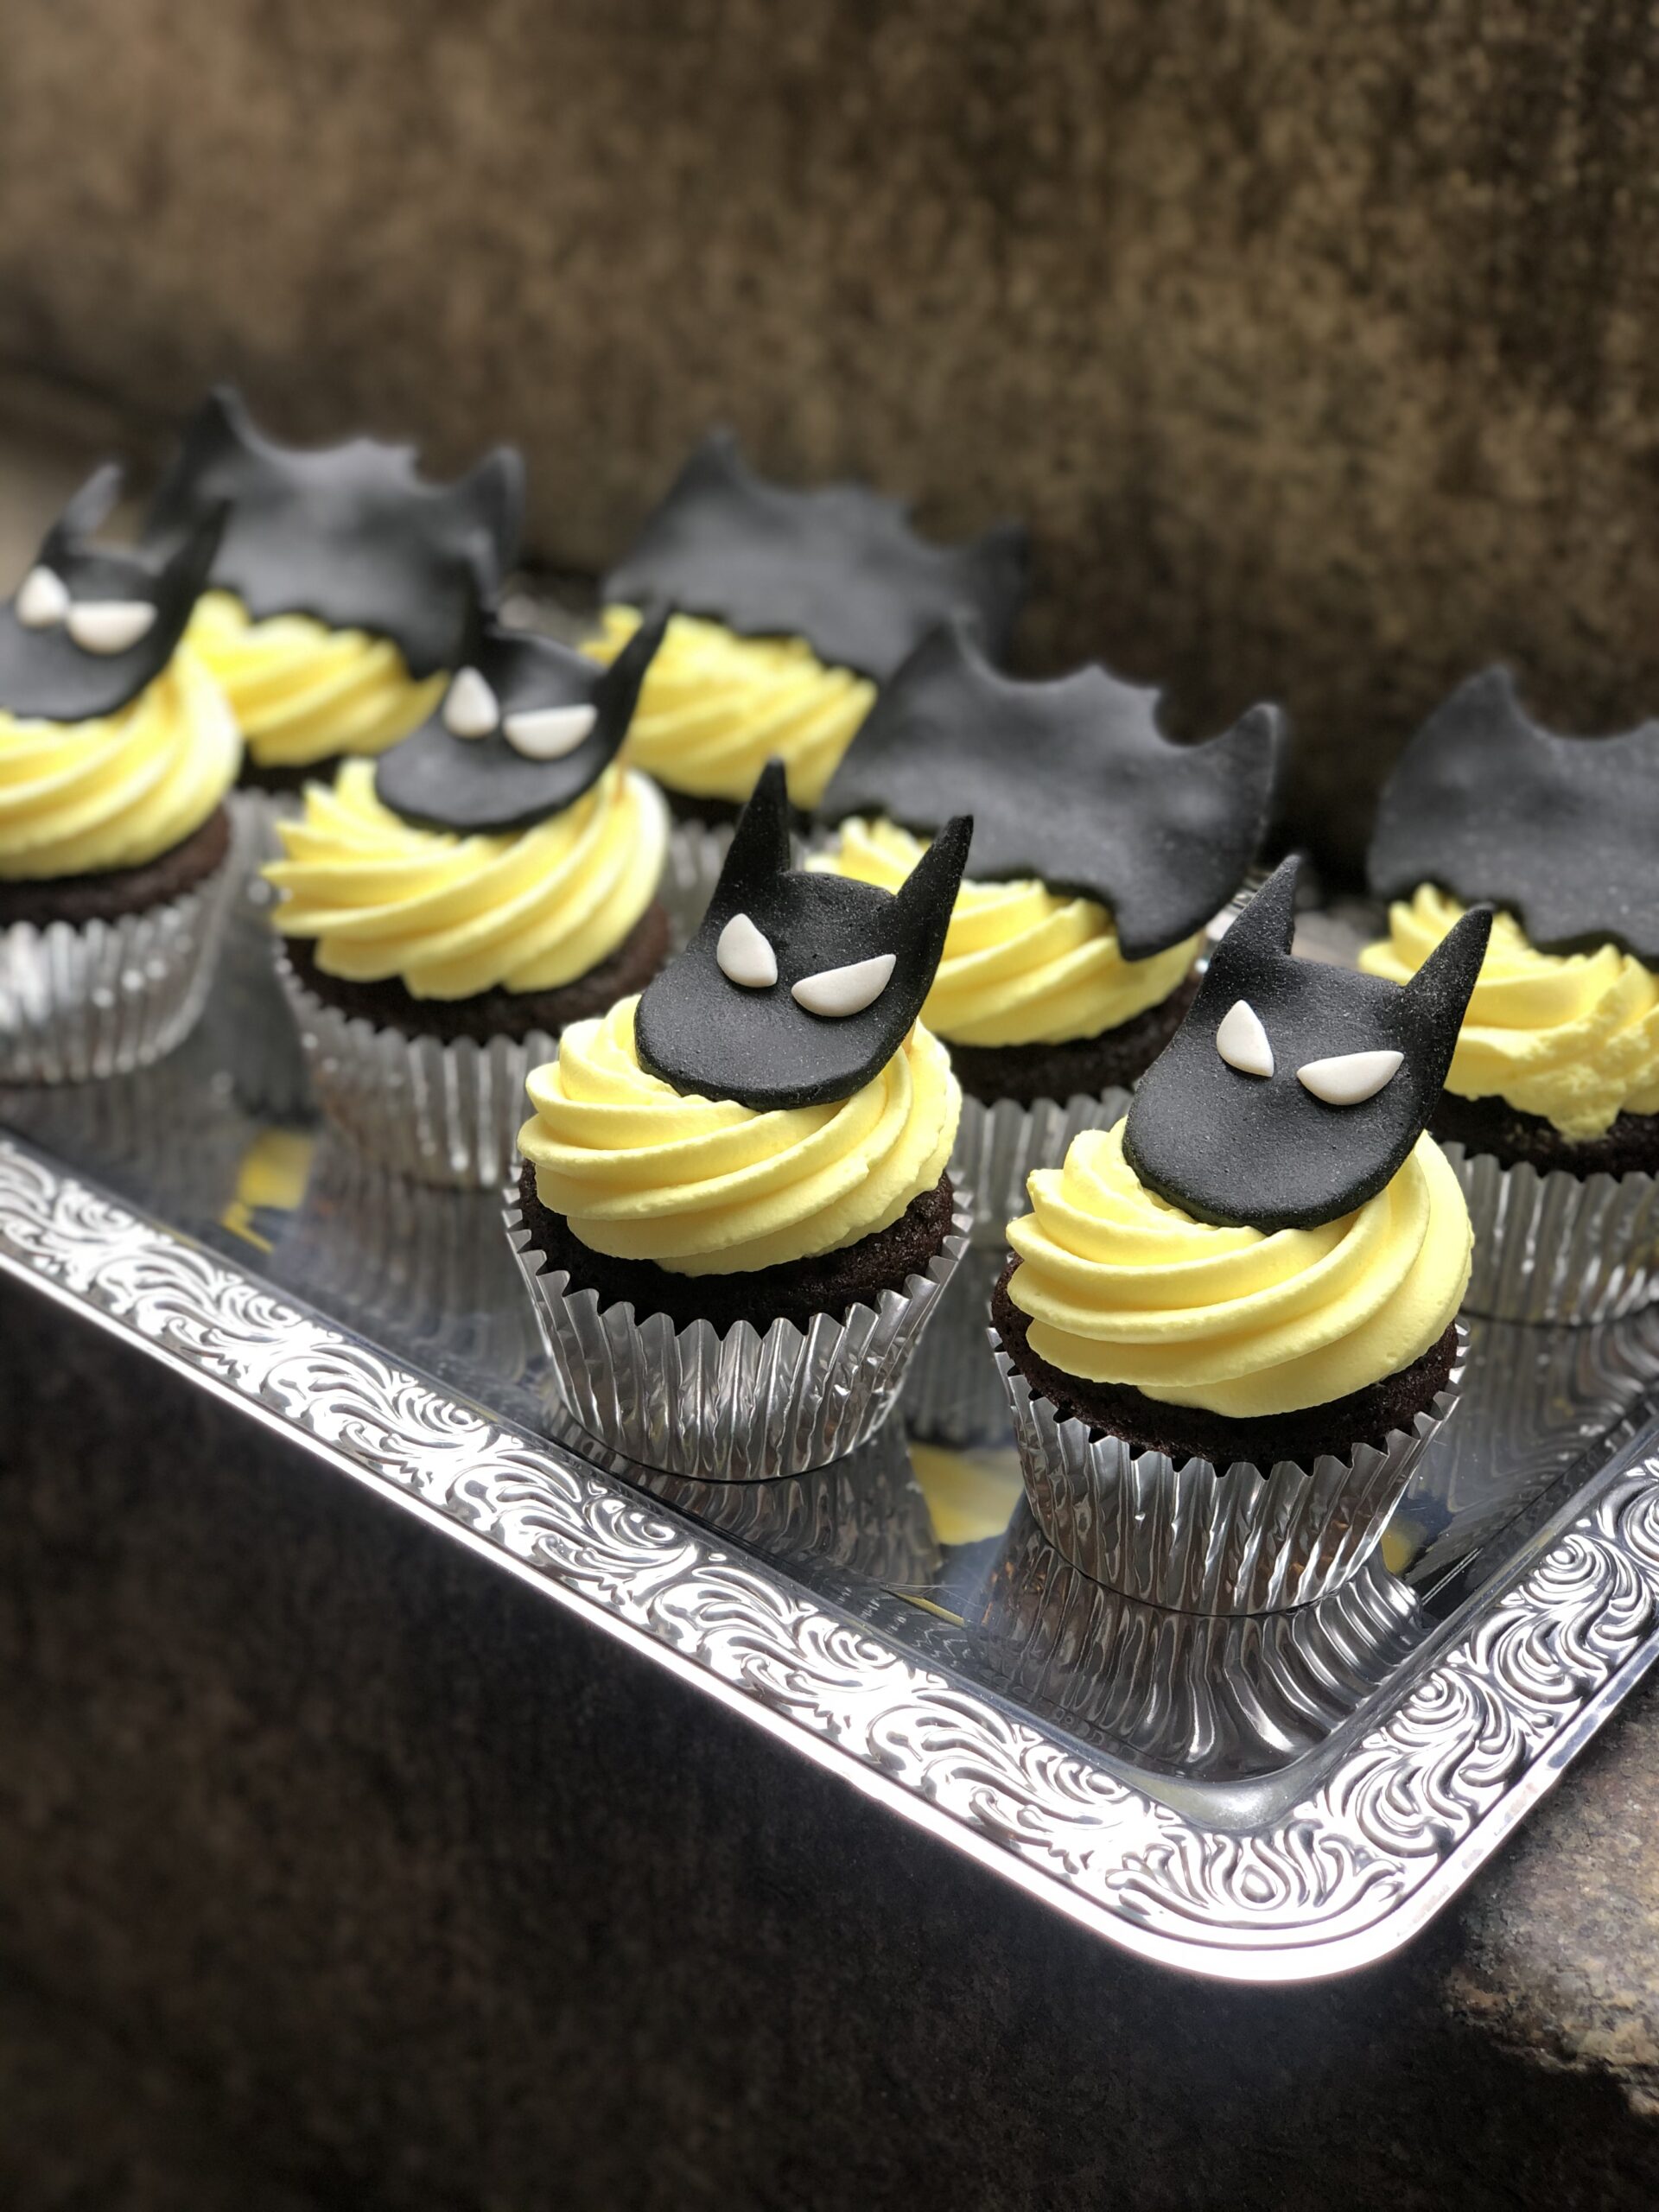 Batman cupcakes